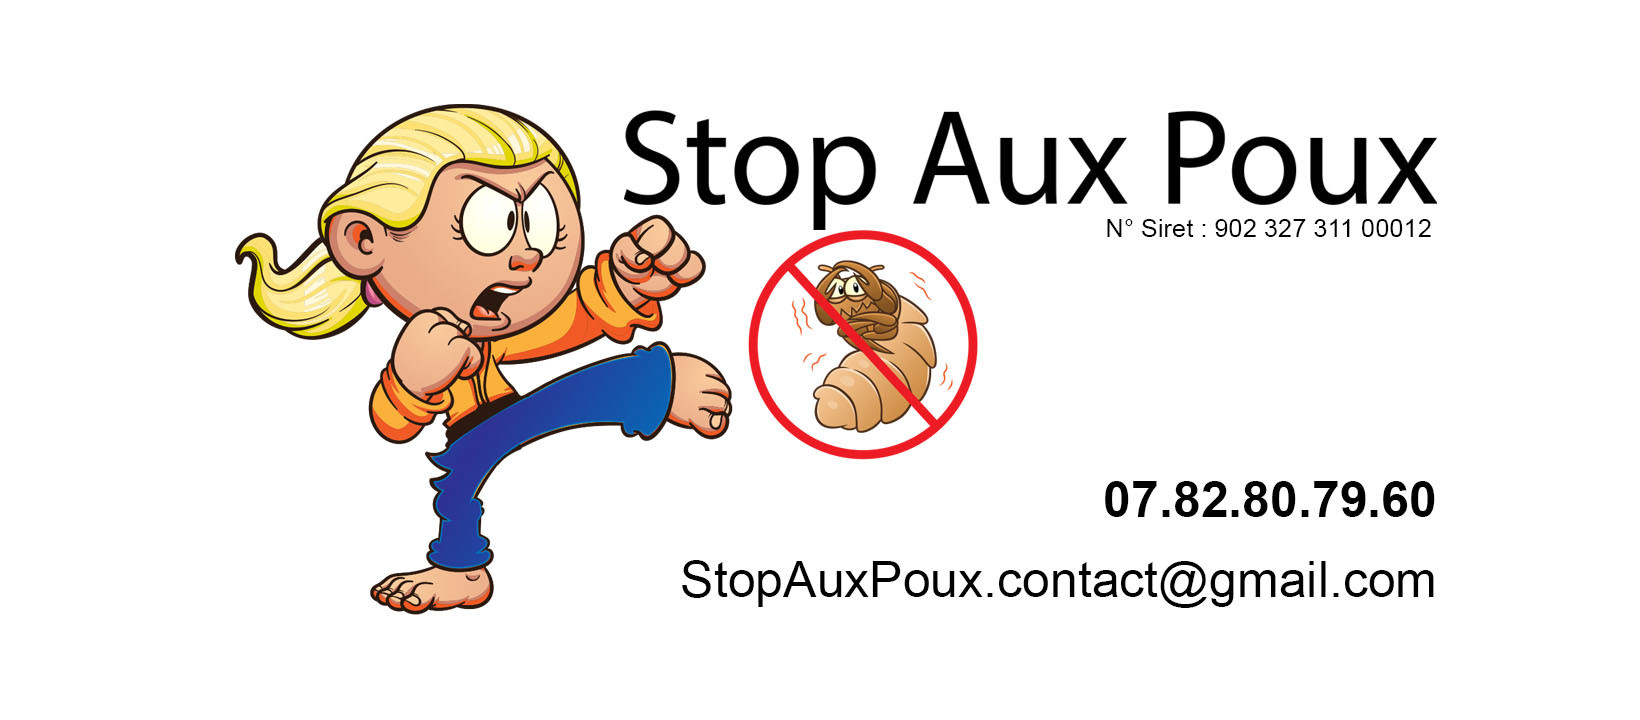 STOP AUX POUX